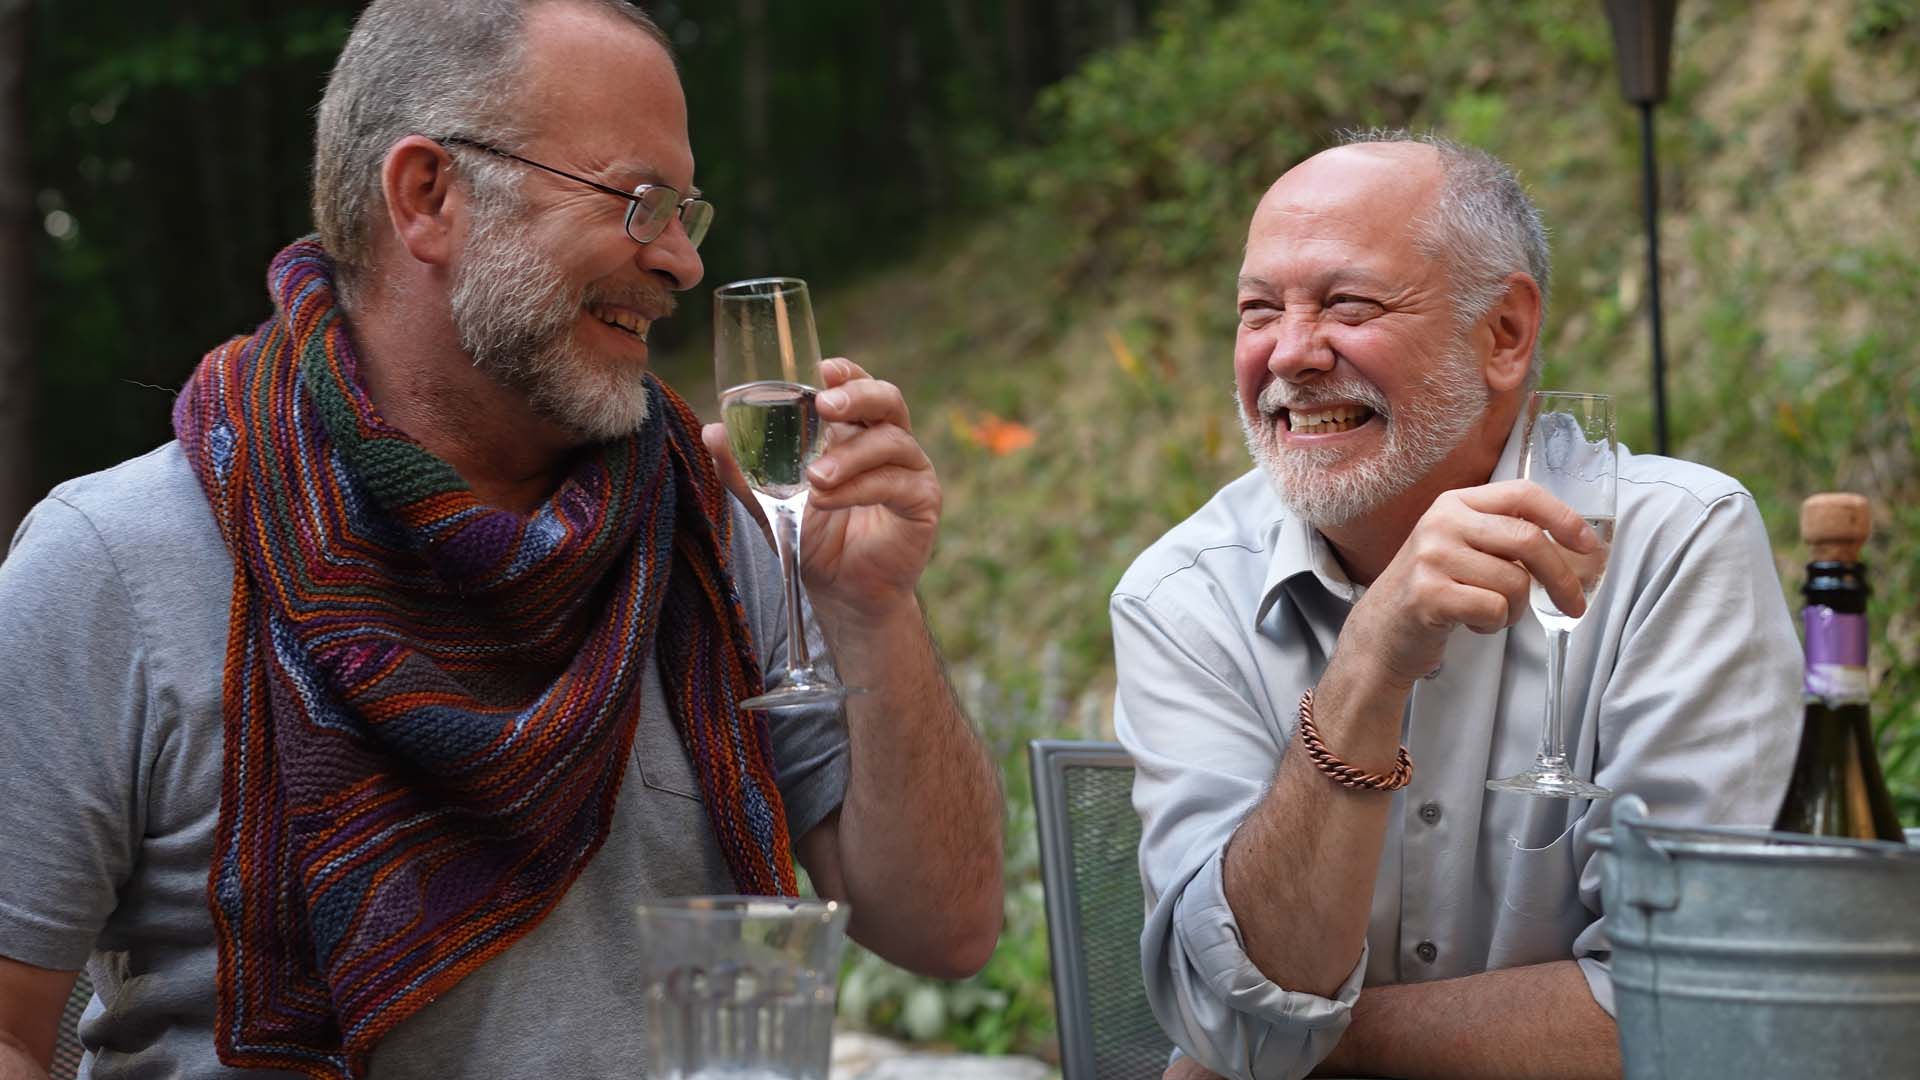 Two older men enjoy a glass of wine together